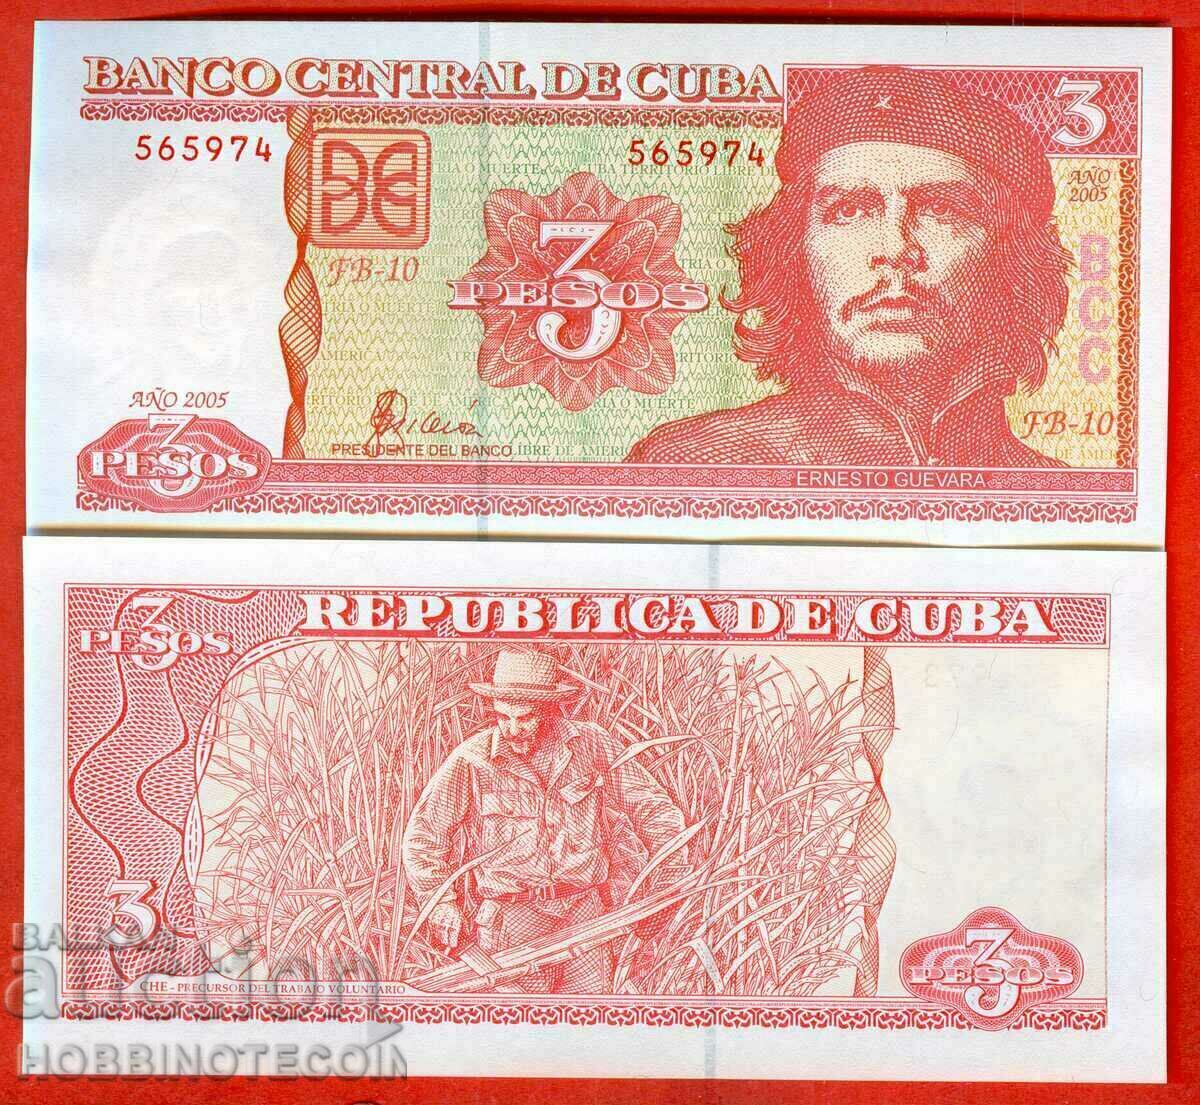 CUBA CUBA COINS Έκδοση 3 Πέσο έκδοση 2005 NEW UNC